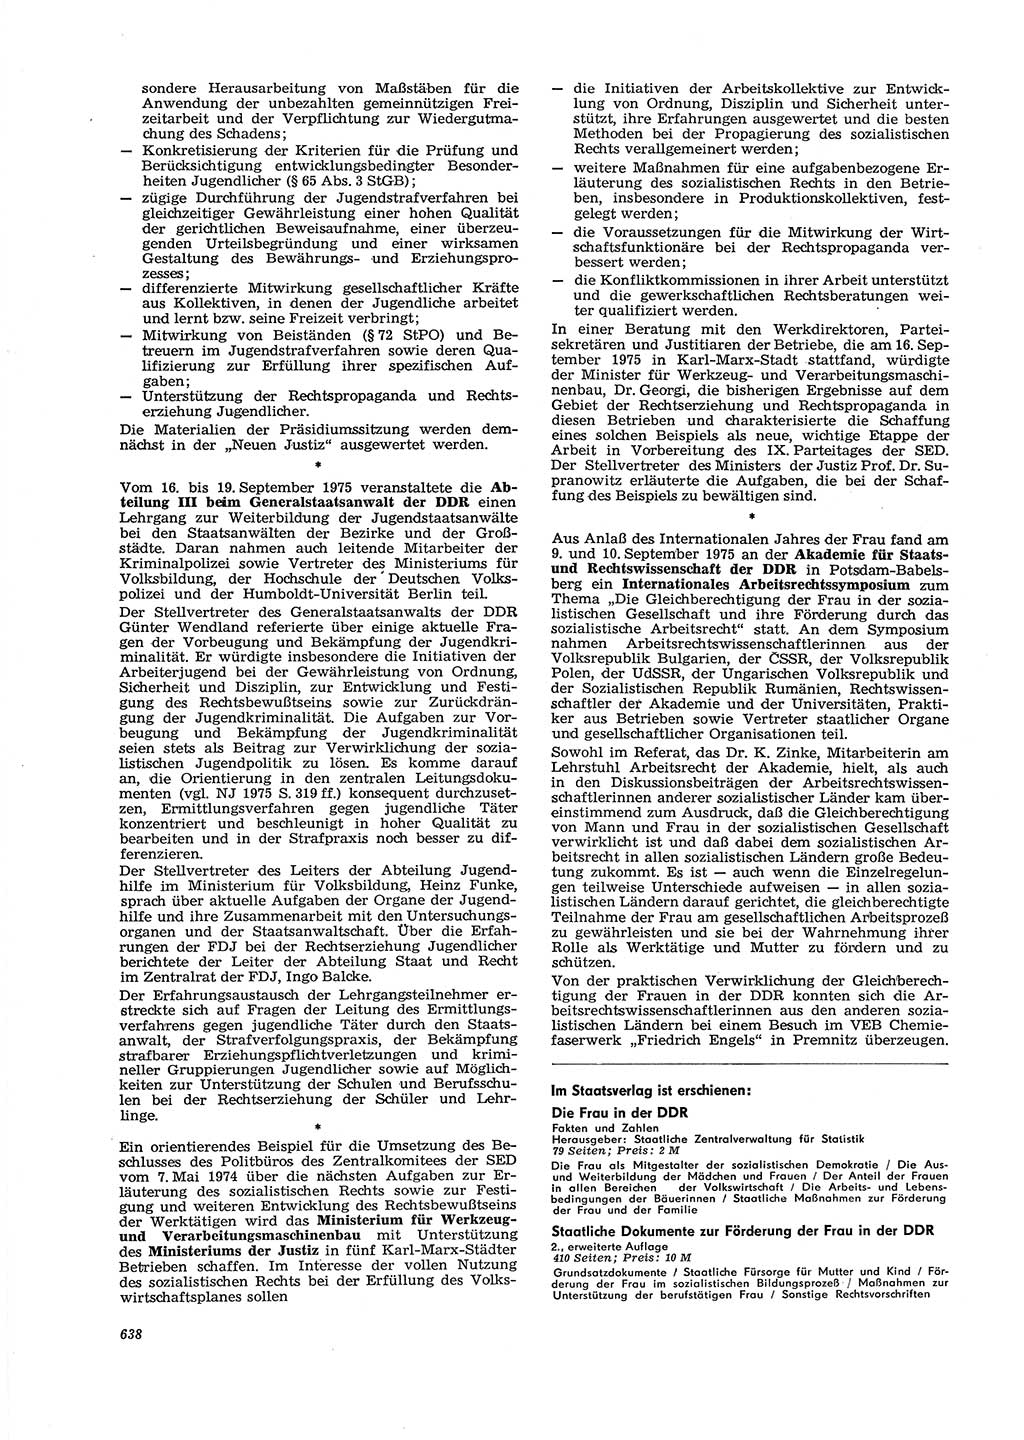 Neue Justiz (NJ), Zeitschrift für Recht und Rechtswissenschaft [Deutsche Demokratische Republik (DDR)], 29. Jahrgang 1975, Seite 638 (NJ DDR 1975, S. 638)